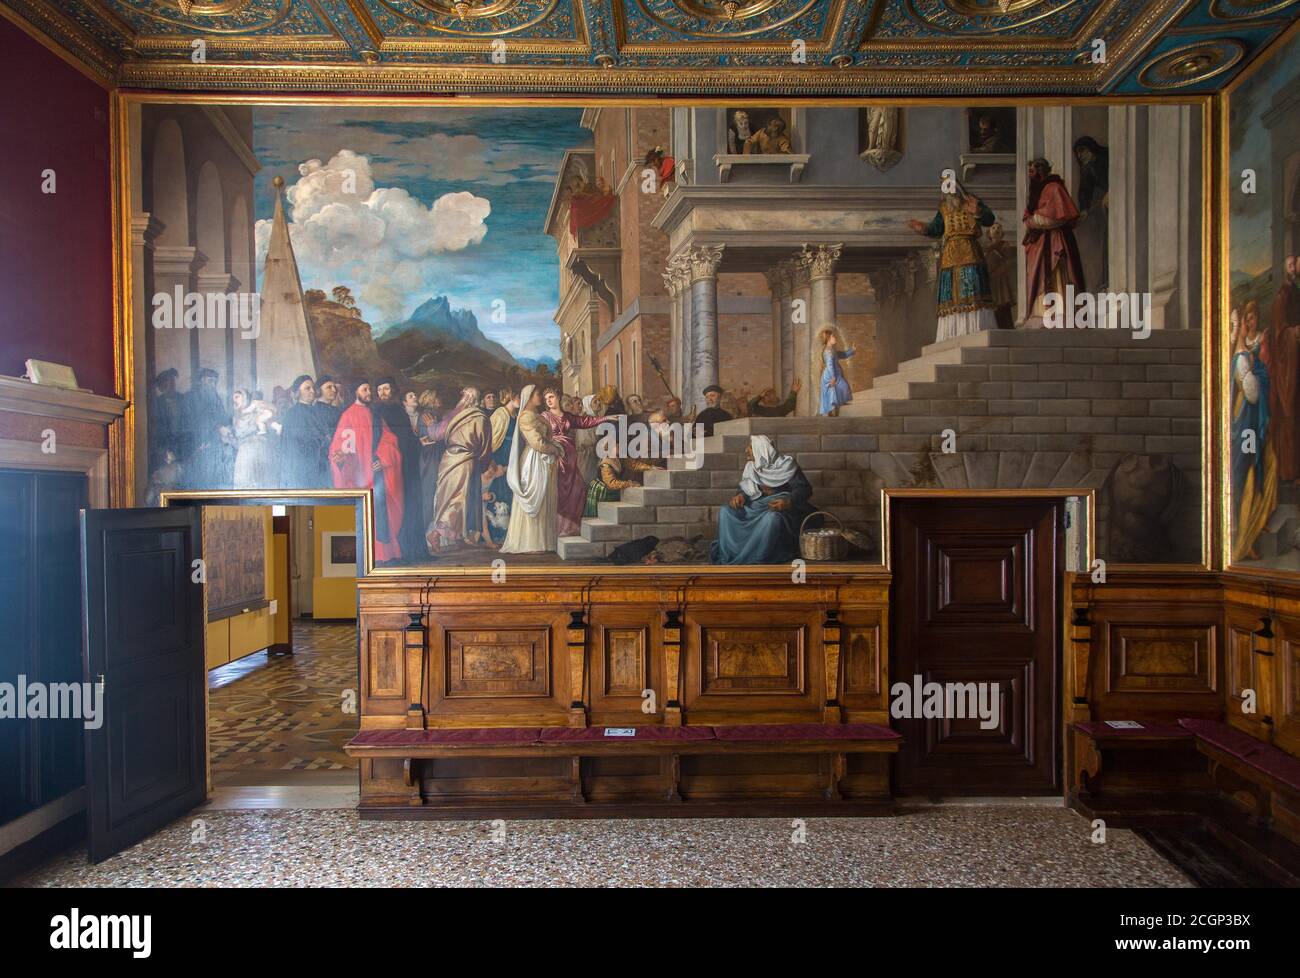 Interior with murals in the Museum Gallerie dell'Accademia, Dorsoduro, Venice, Italy Stock Photo